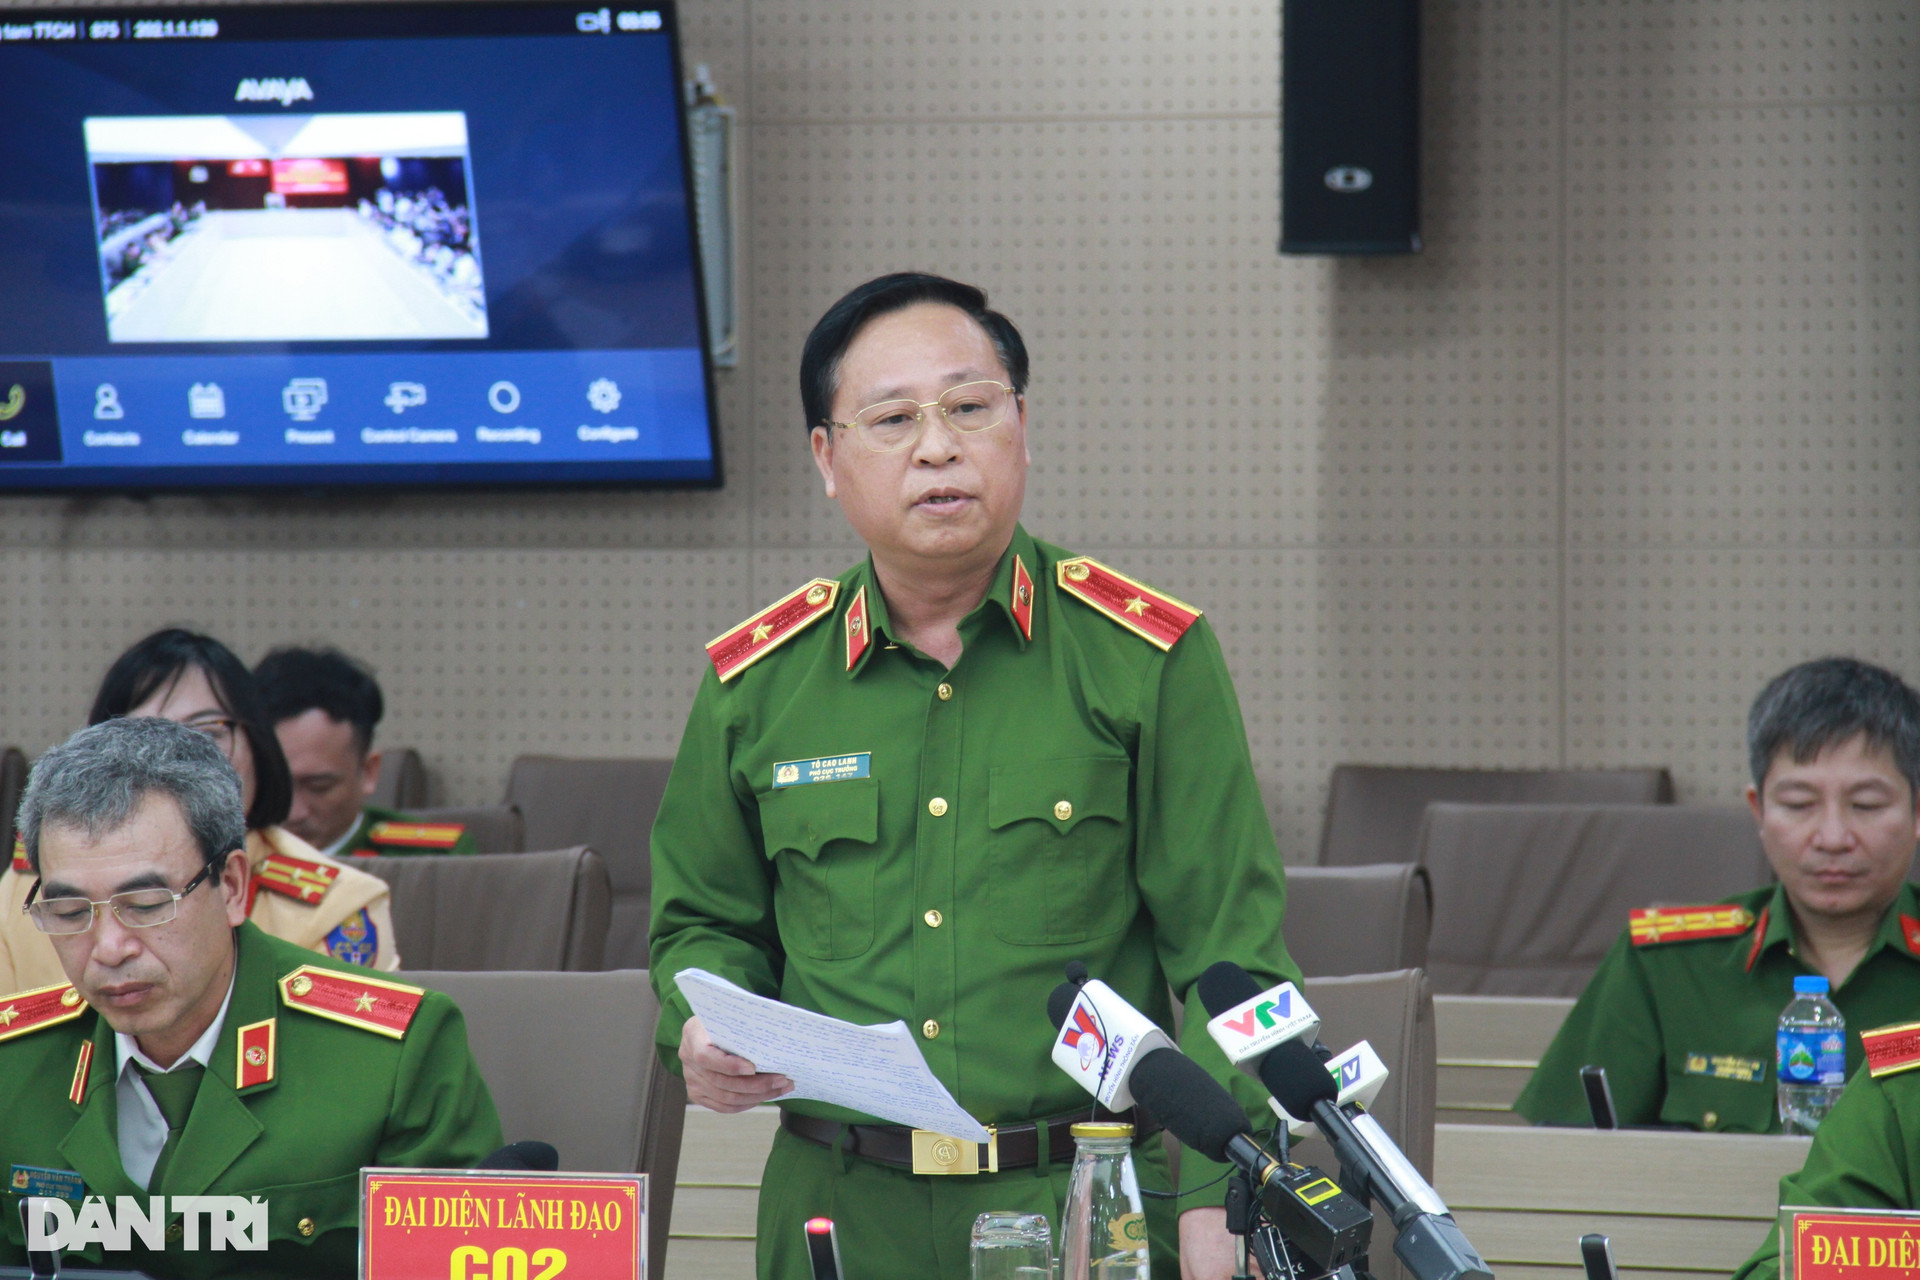 Vụ chủ tịch huyện Nhơn Trạch bị lừa 170 tỷ đồng: Đã khởi tố vụ án - 1